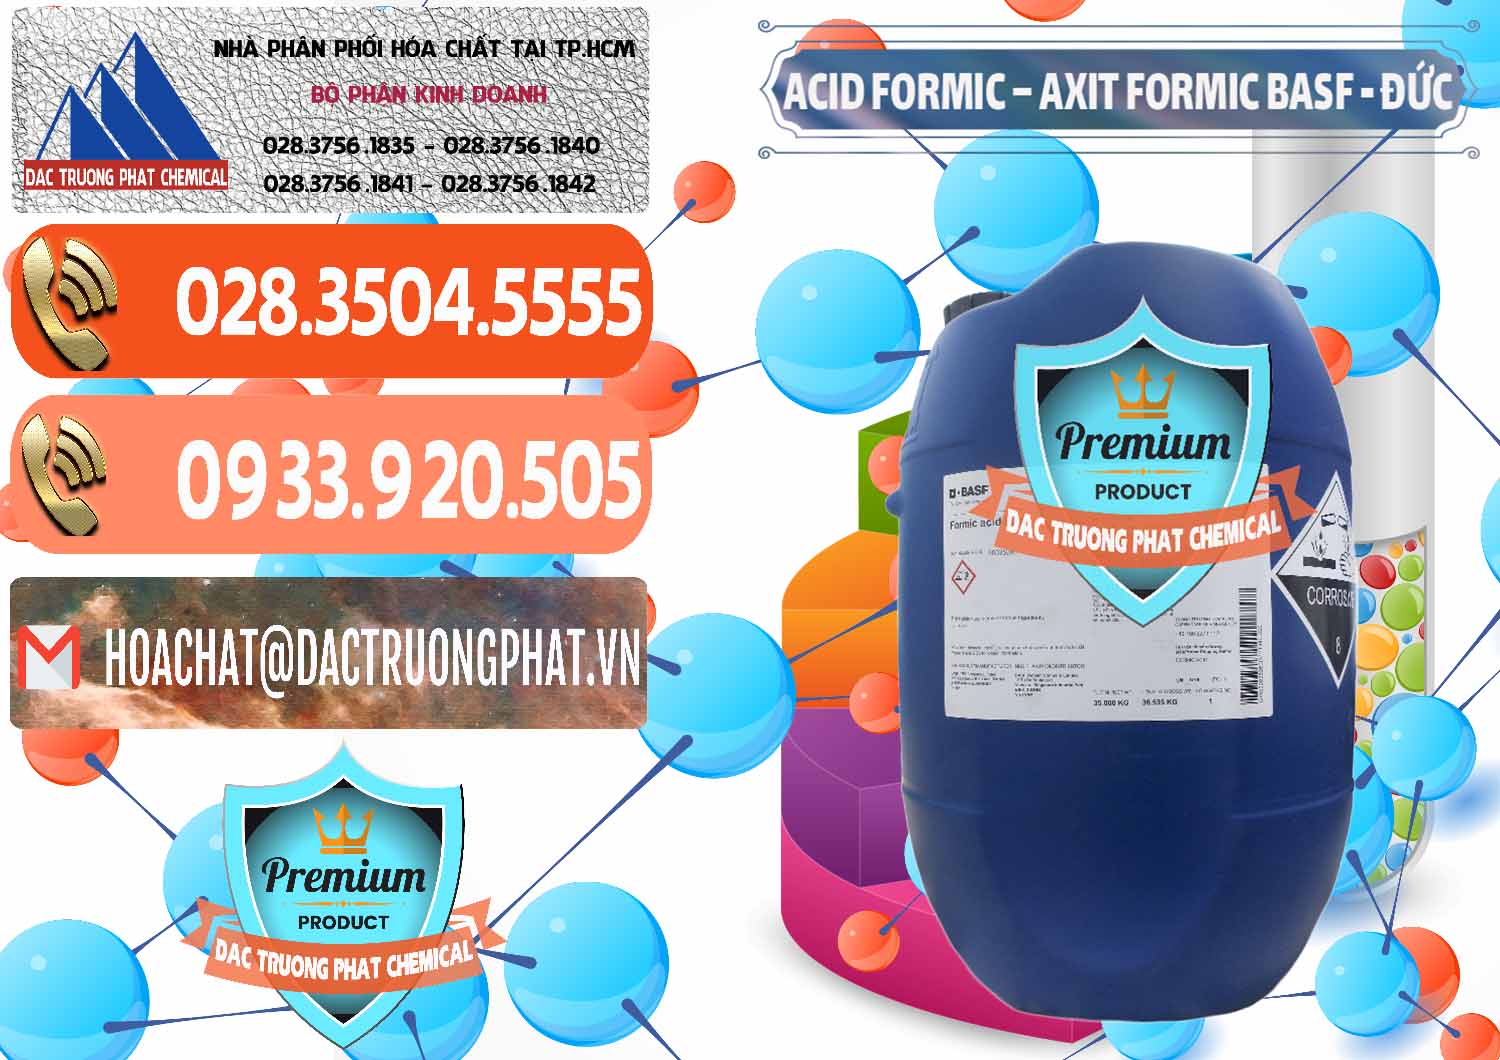 Cty chuyên phân phối & bán Acid Formic - Axit Formic BASF Đức Germany - 0028 - Nhà cung cấp - kinh doanh hóa chất tại TP.HCM - hoachatmientay.com